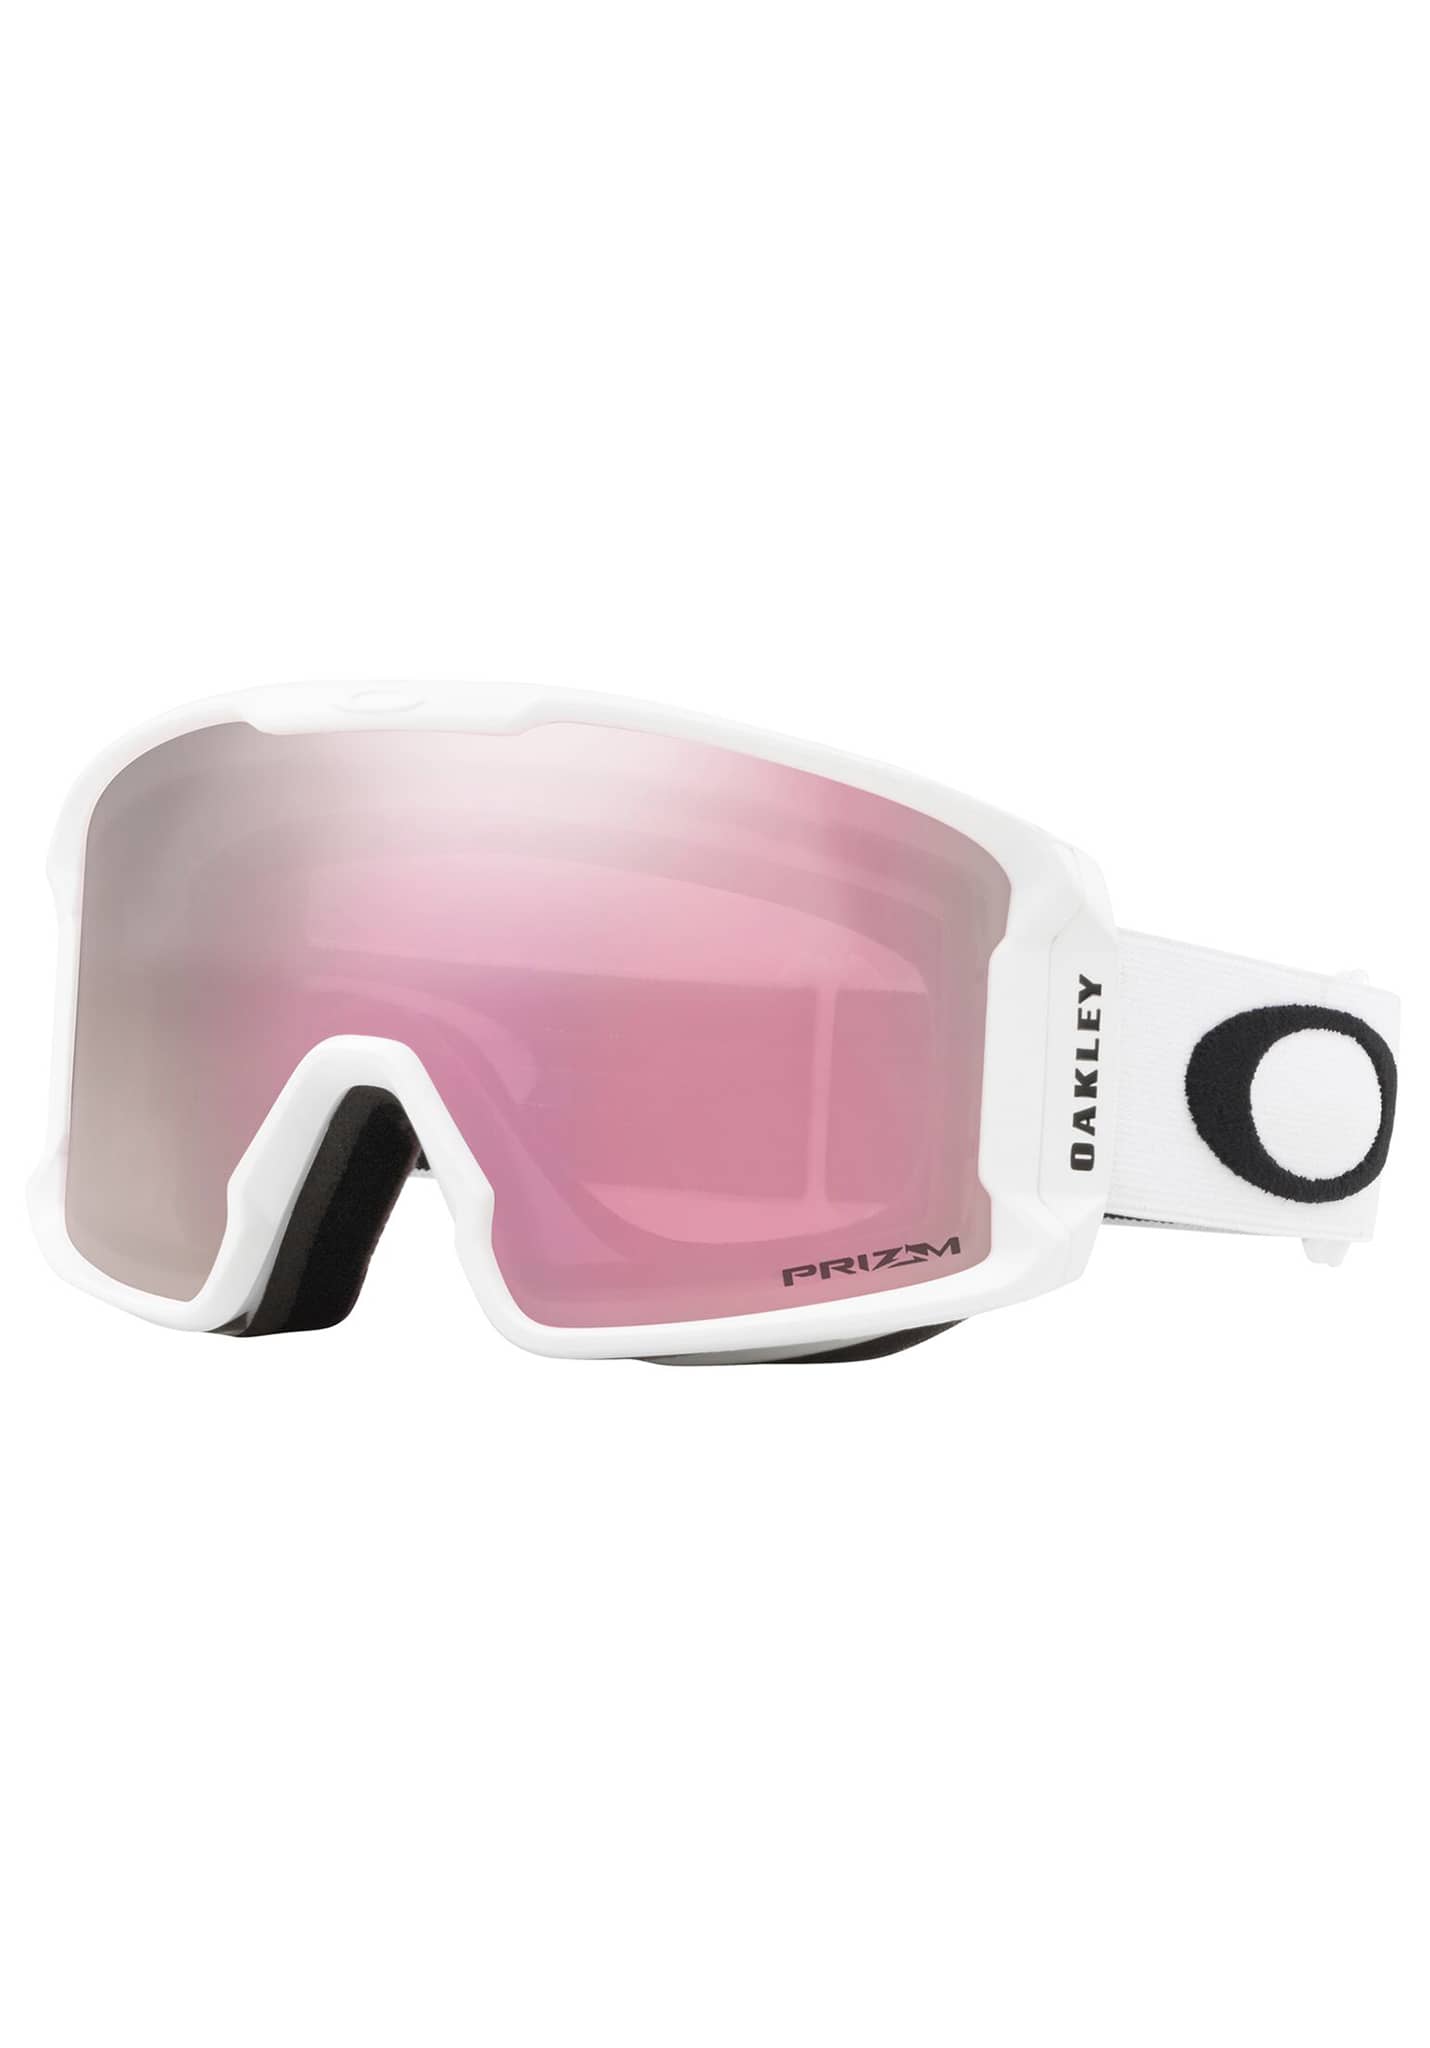 Oakley Line Miner M Snowboardbrillen mattes weiß/prizm hi pink iridium One Size